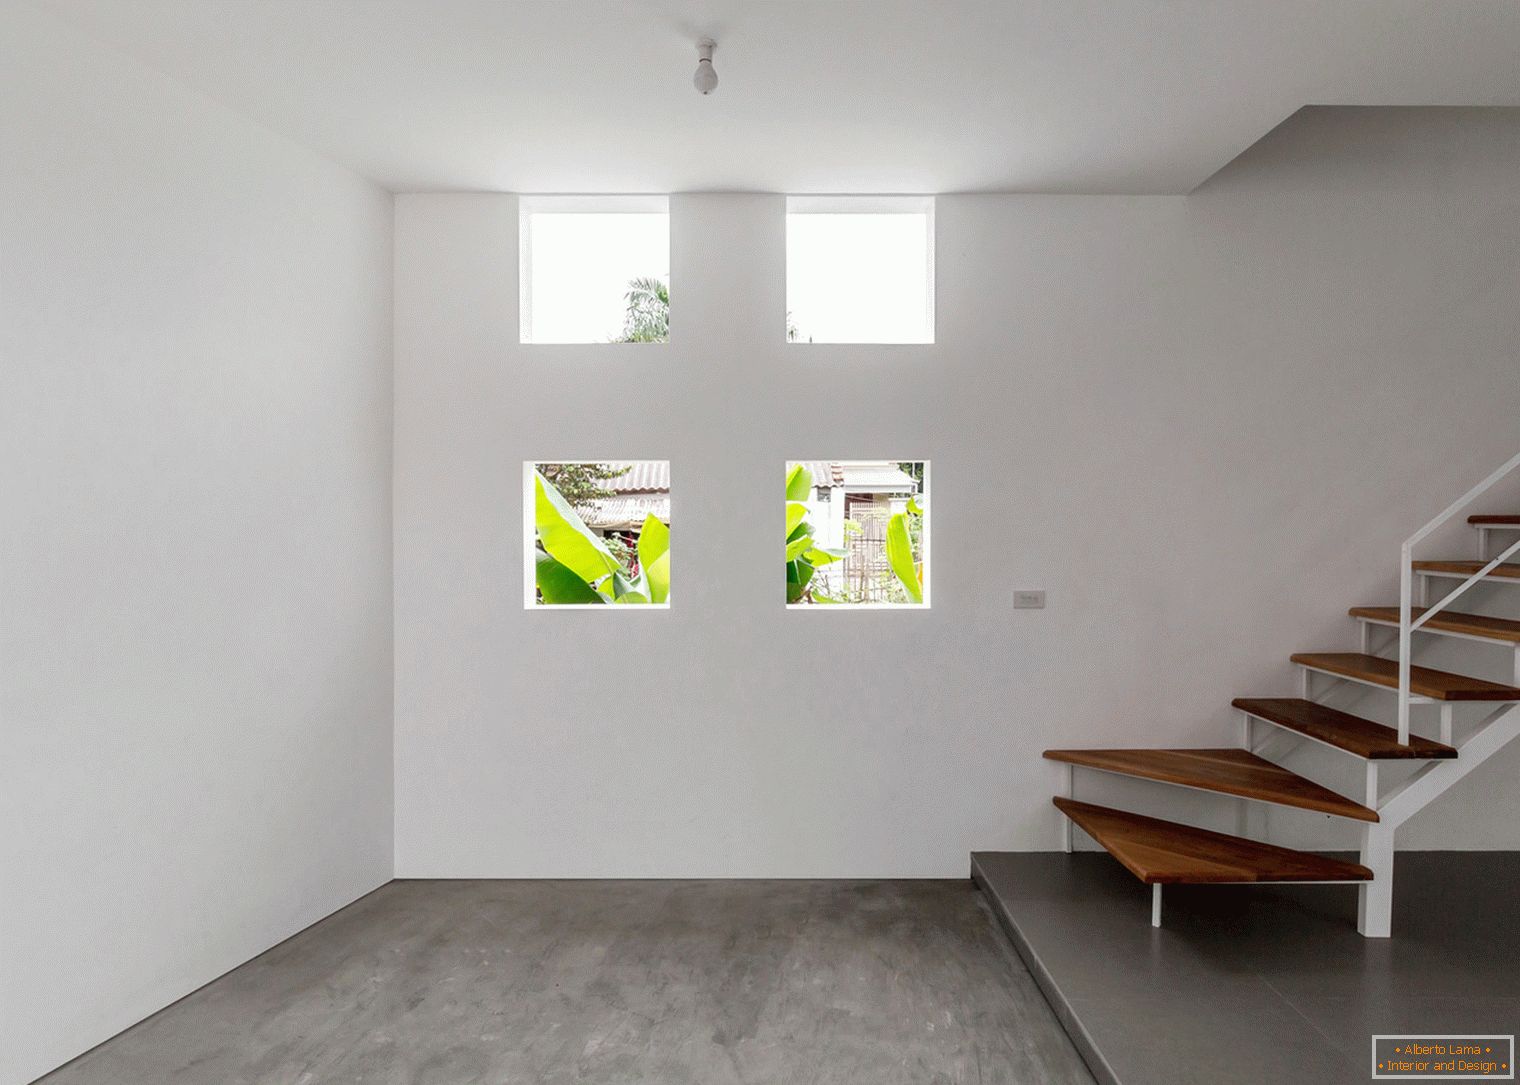 Pequenas janelas em uma casa de concreto estreito